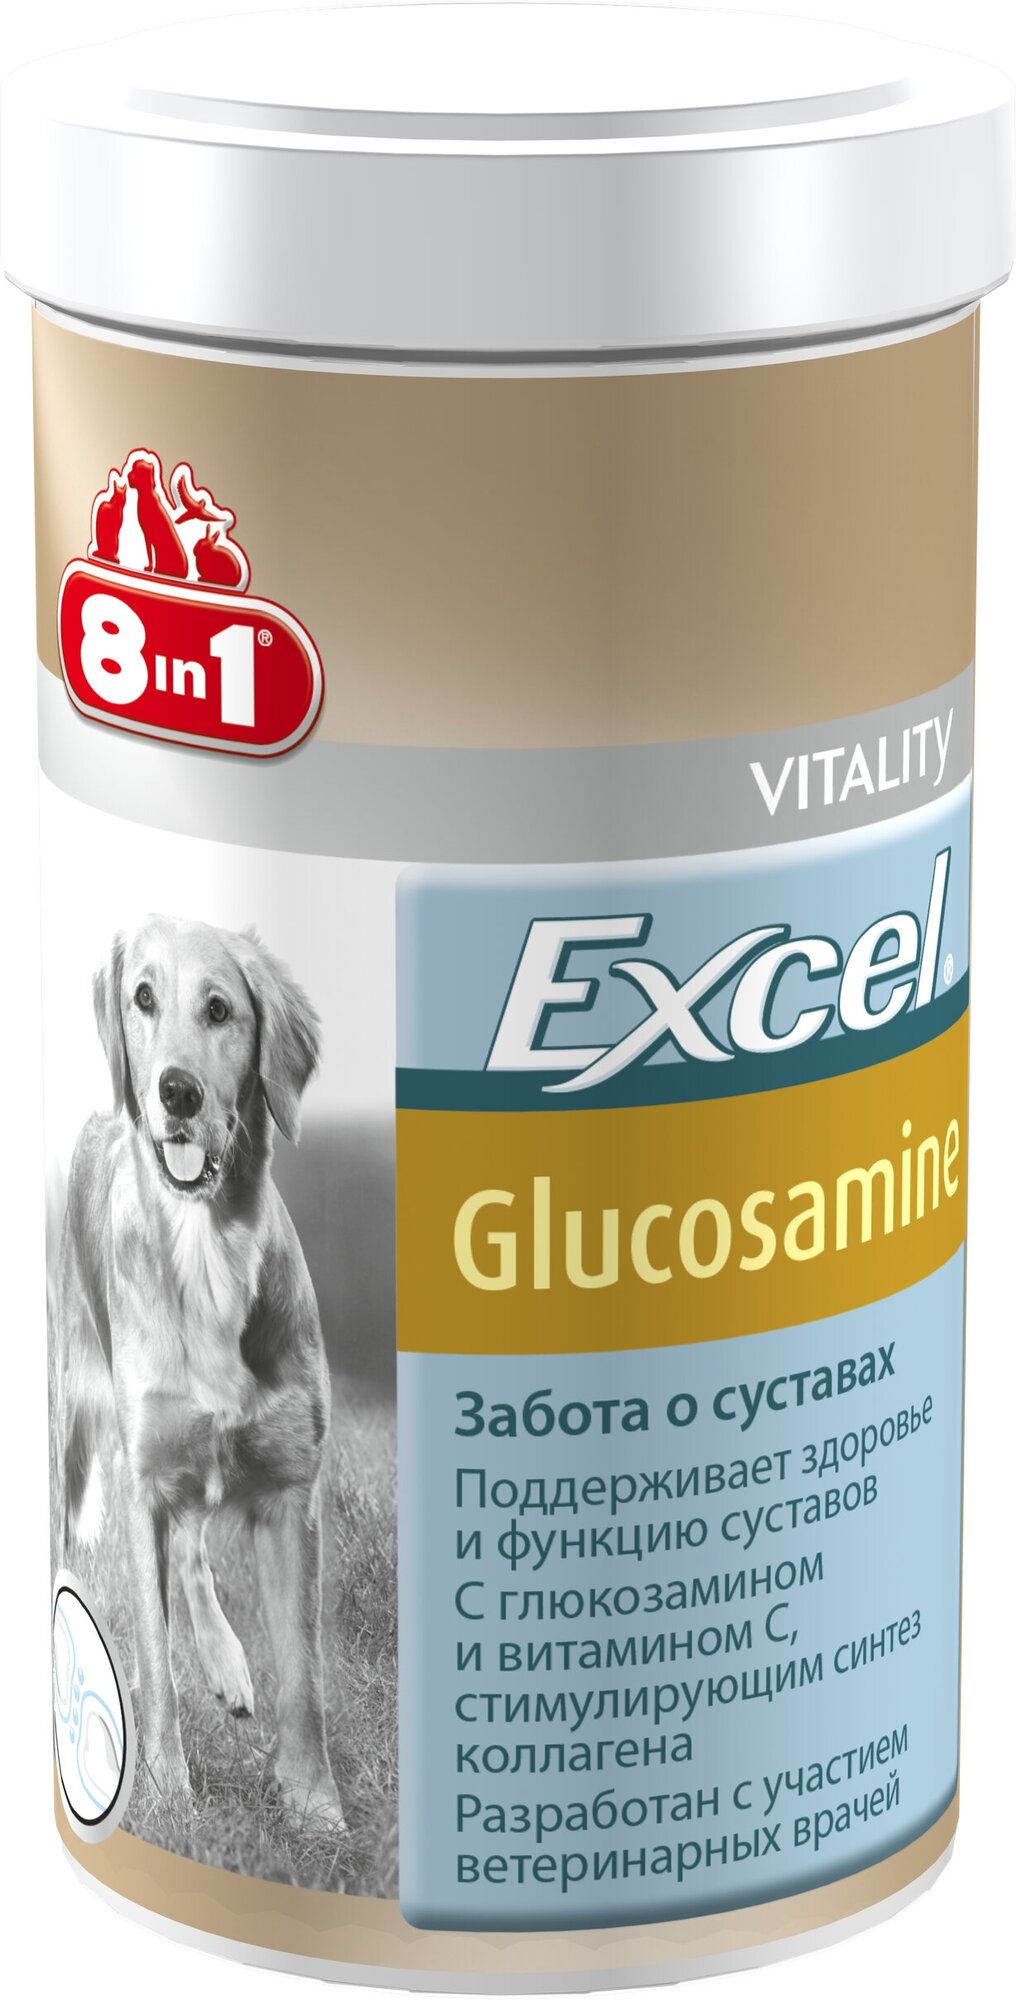 Витамины для взрослых собак 8in1 Excel Глюкозамин, 55таб - фото №14